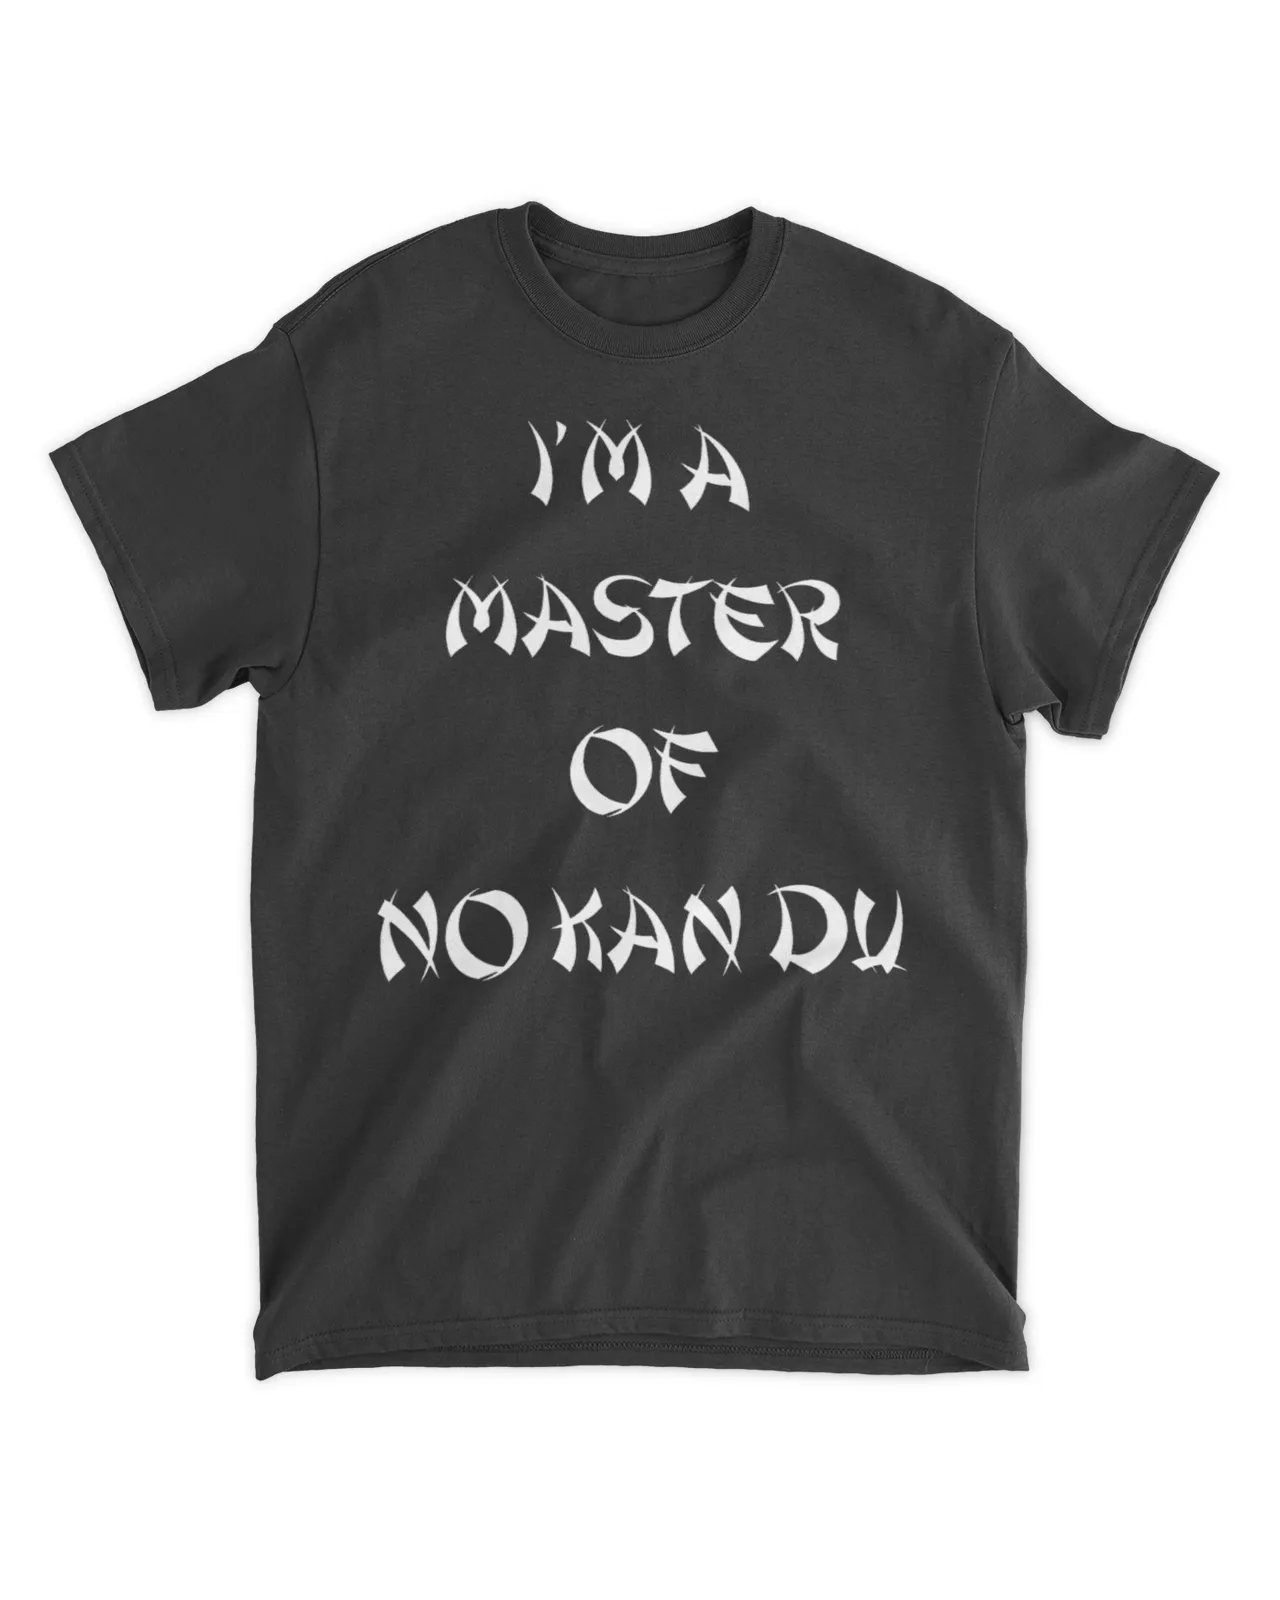  I'm a master of no kan du shirt